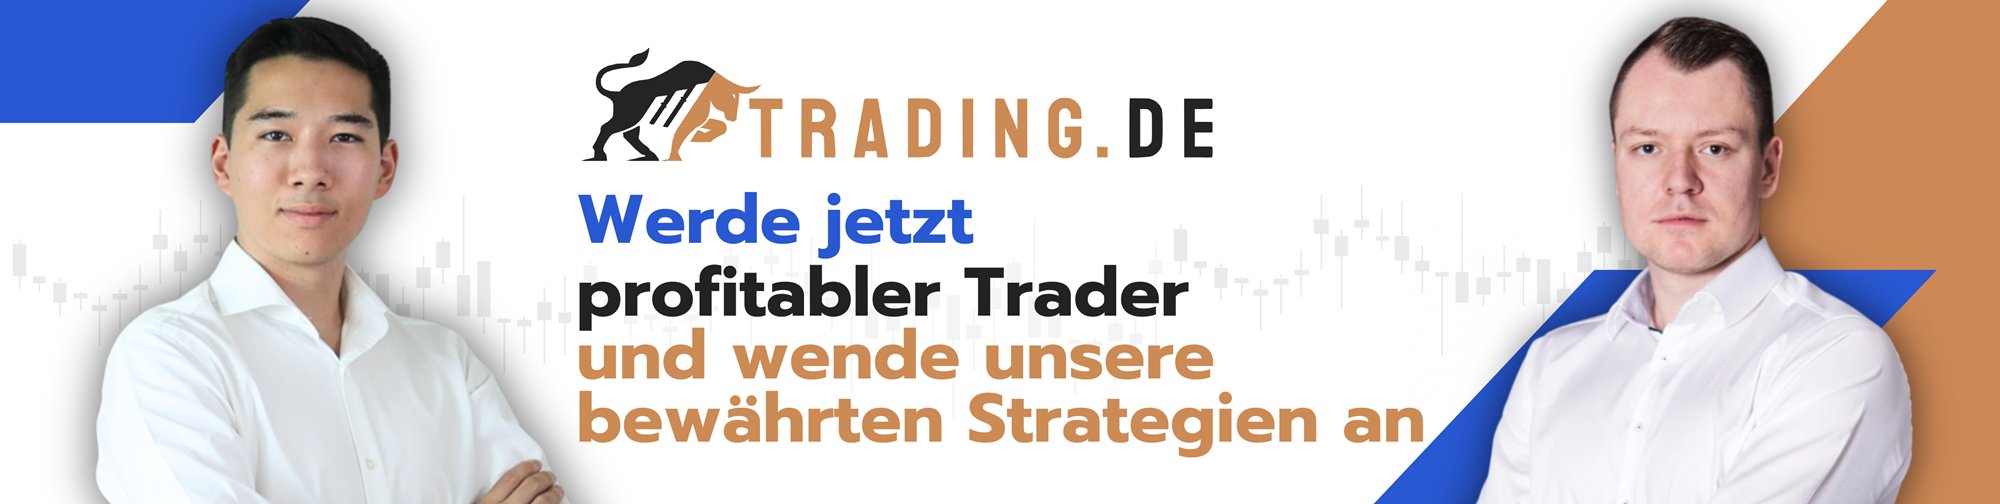 Trading.de Shop mit Andre Witzel